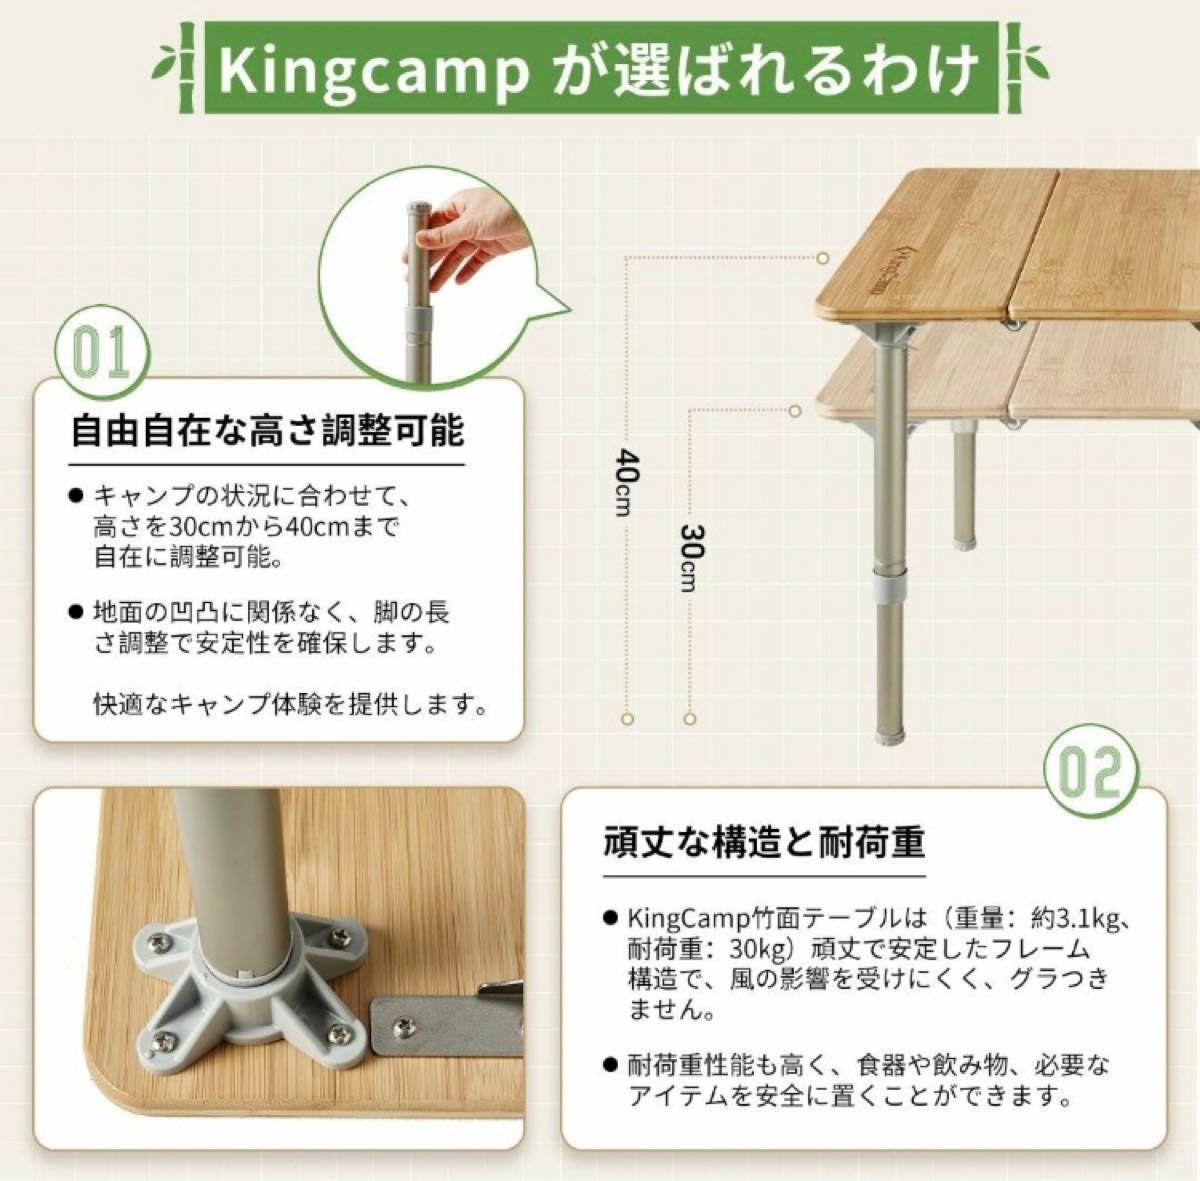 KingCamp バンブーテーブル 竹製テーブル 高さ任意調節可 60×40cm 耐荷重30kg 未使用品